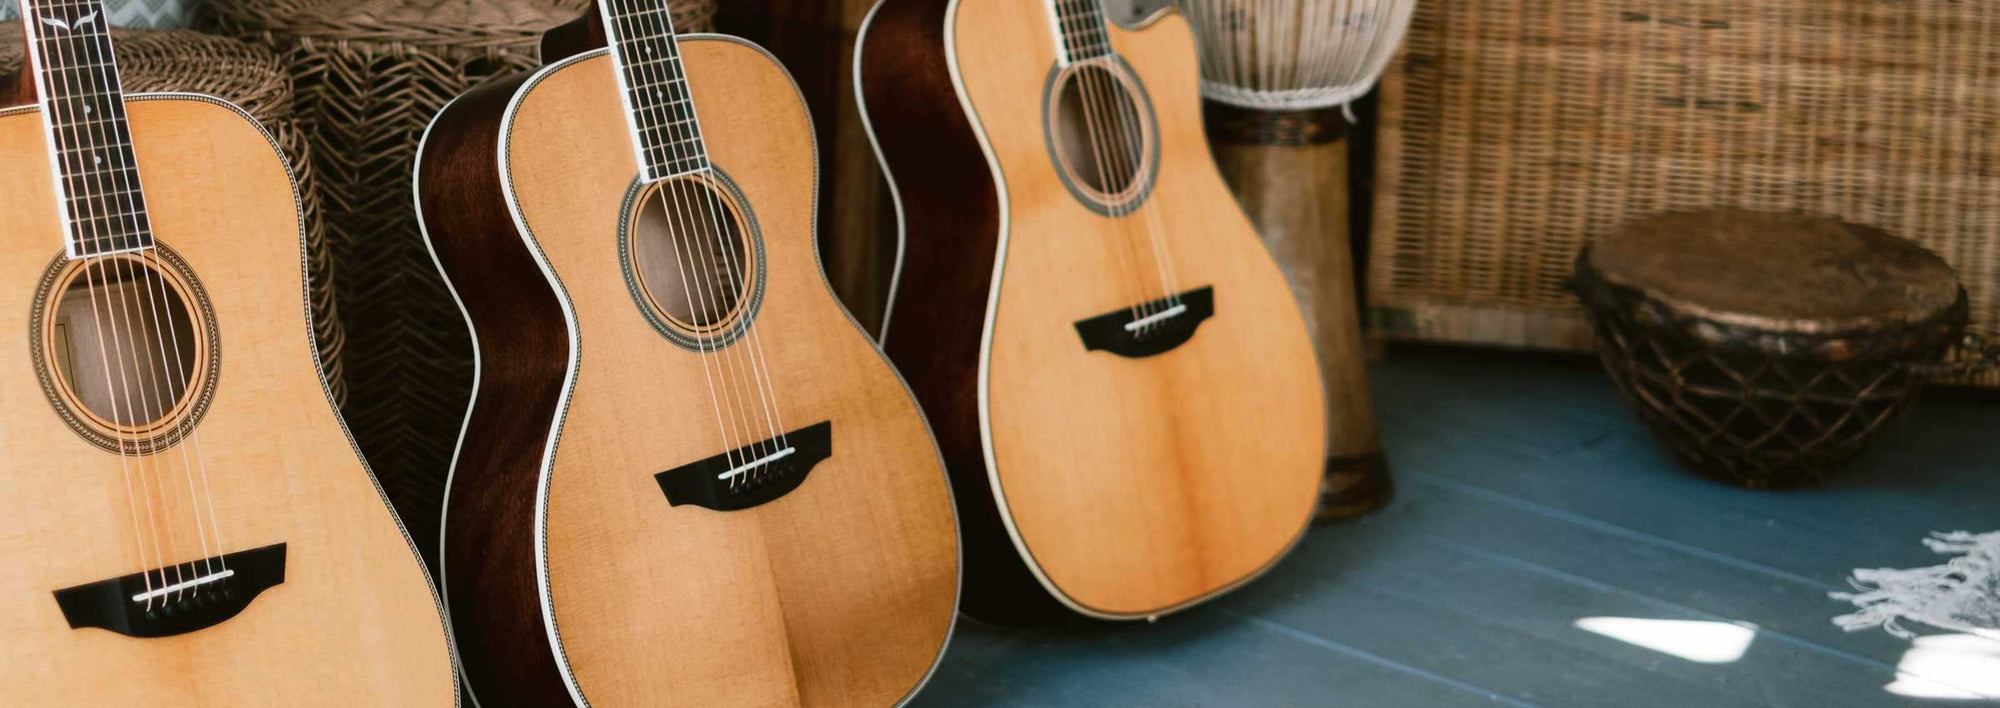 Three Orangewood guitars on a blue wood floor